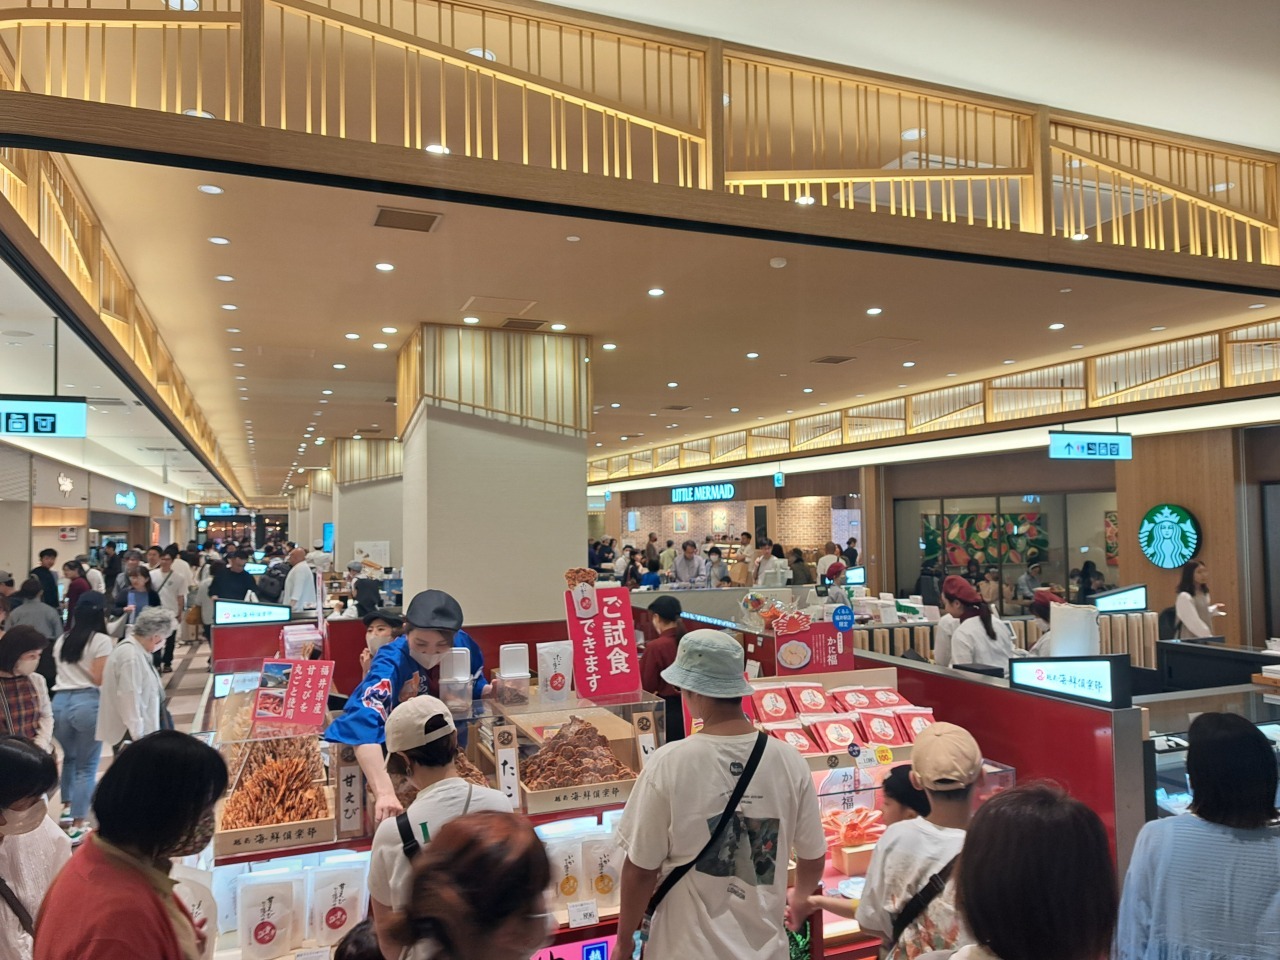 福井駅には、福井の食やお土産が揃う「くるふ福井駅」がオープンします。